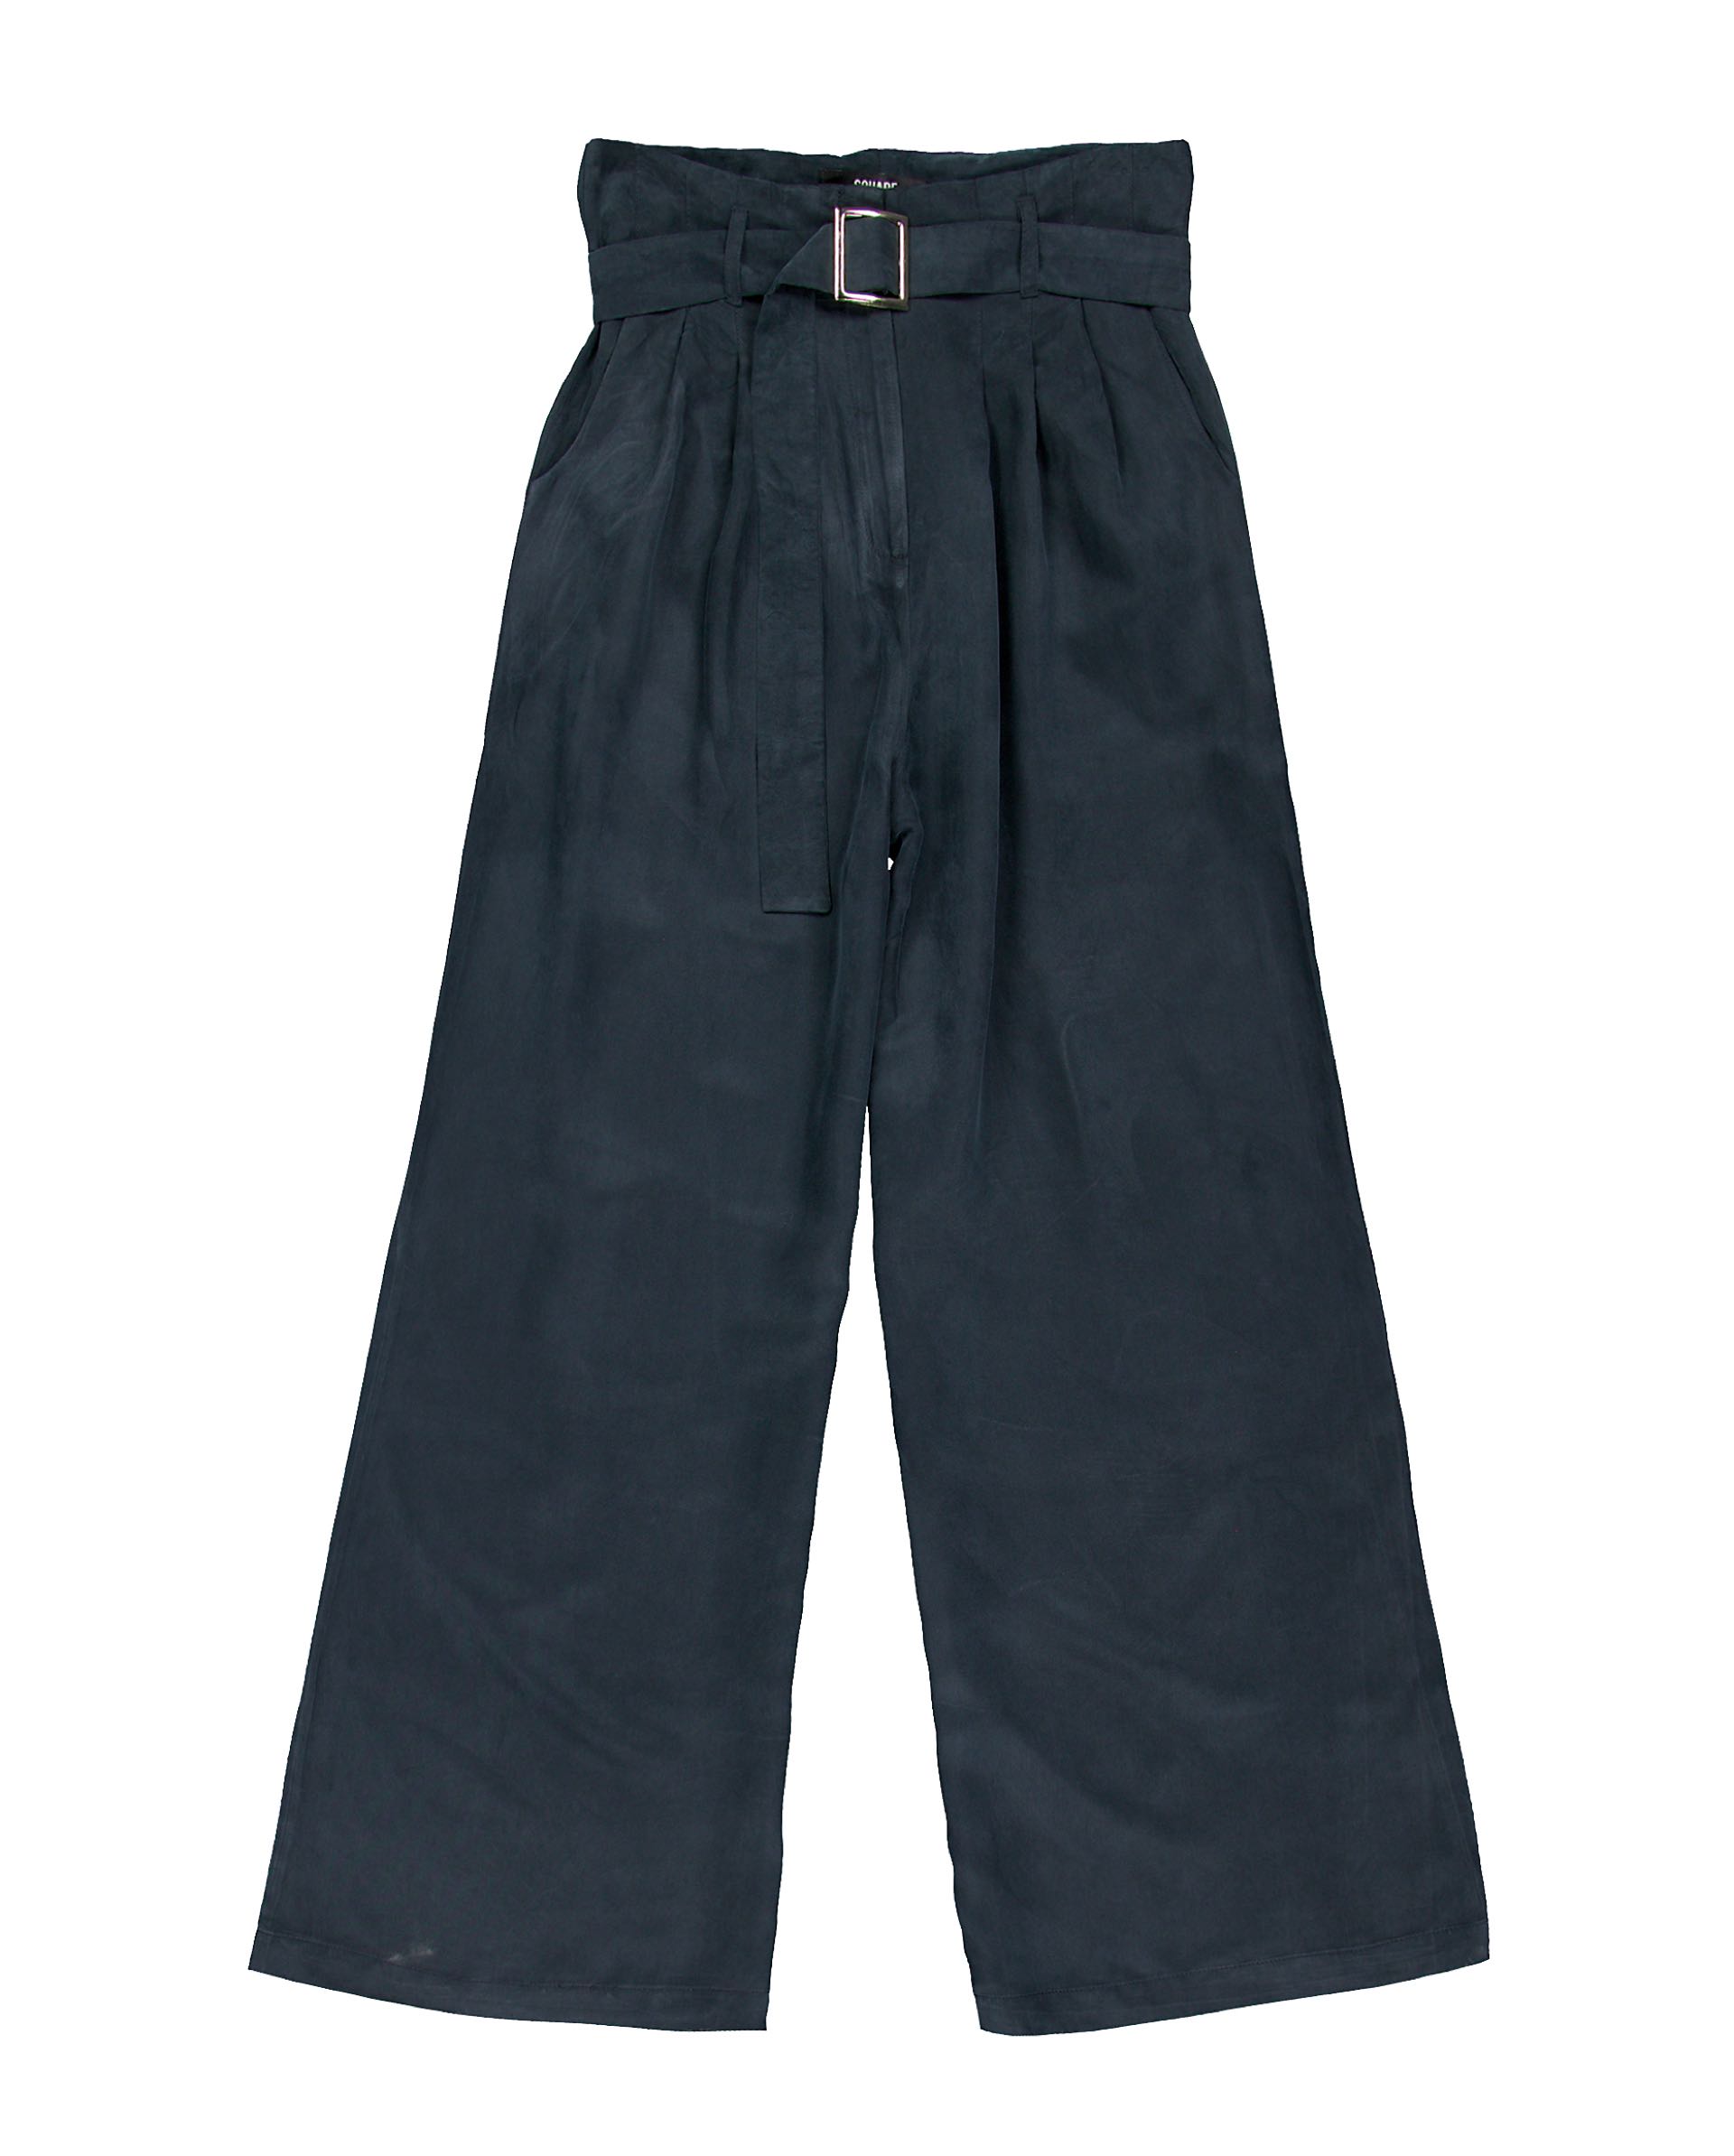 Pantalón ancho de cintura alta ($ 3.150, Square).